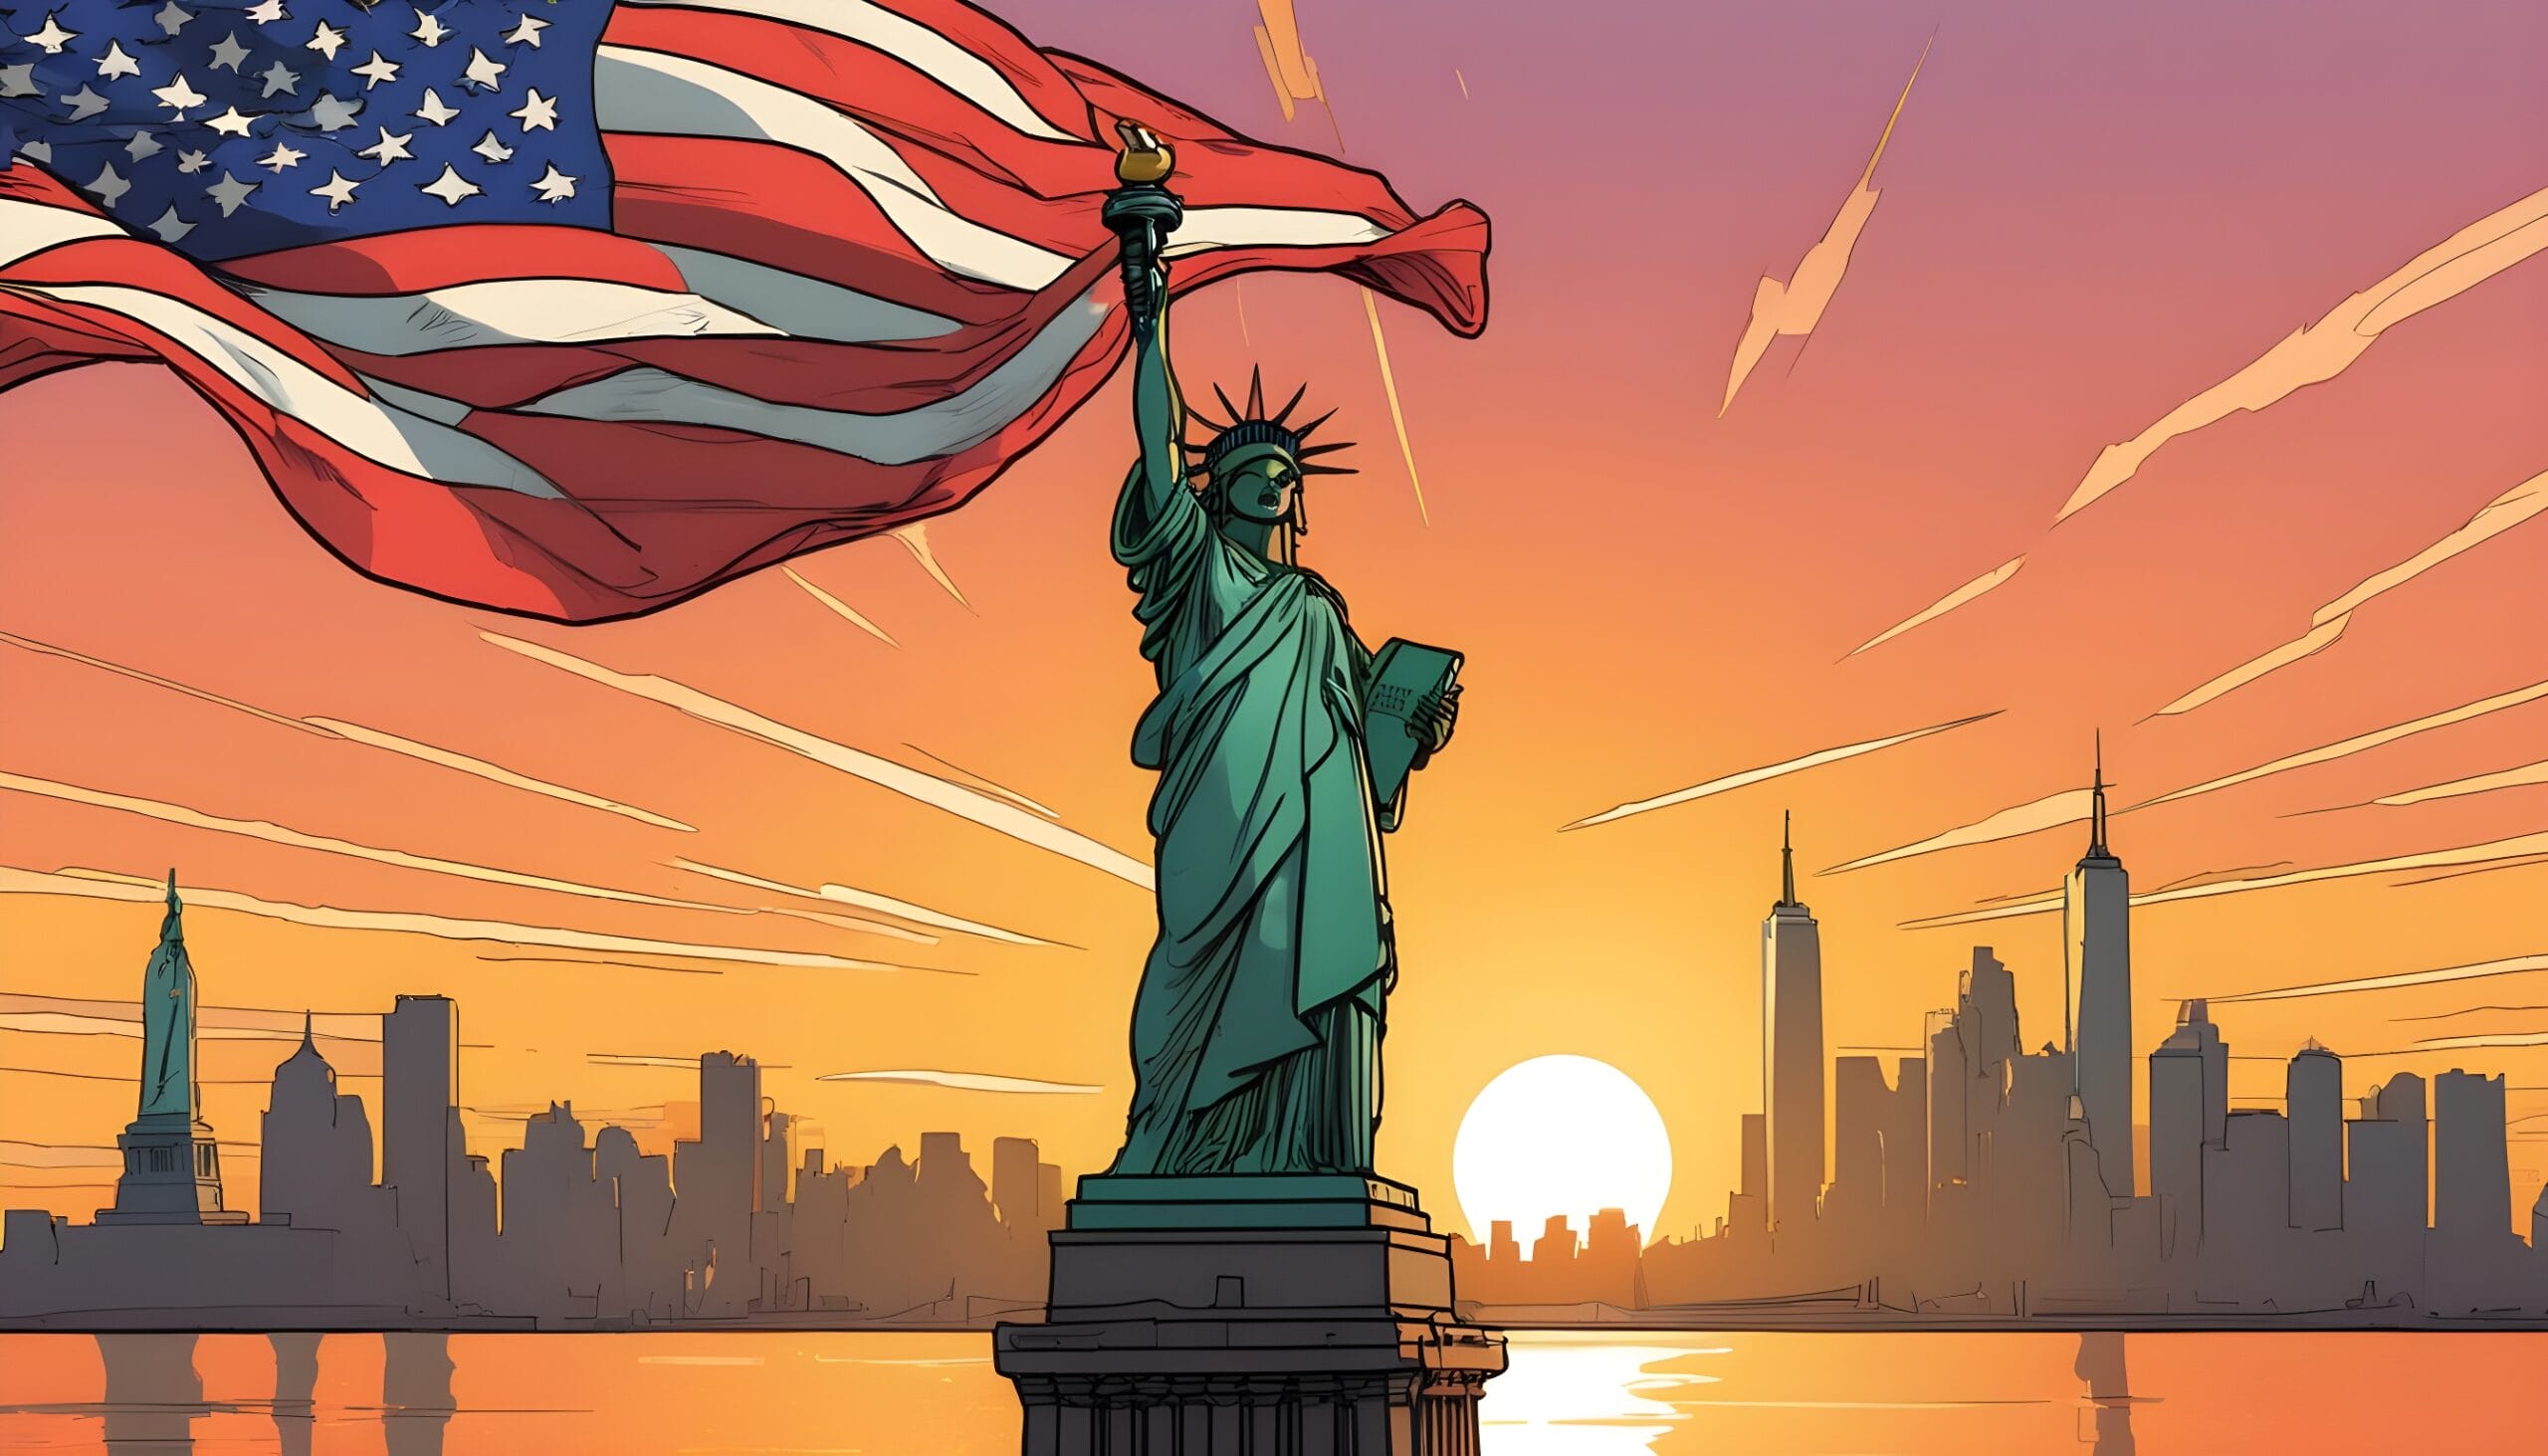 ilustracion de la ciudad de nueva york con la estatua de la libertad y una bandera de estados unidos